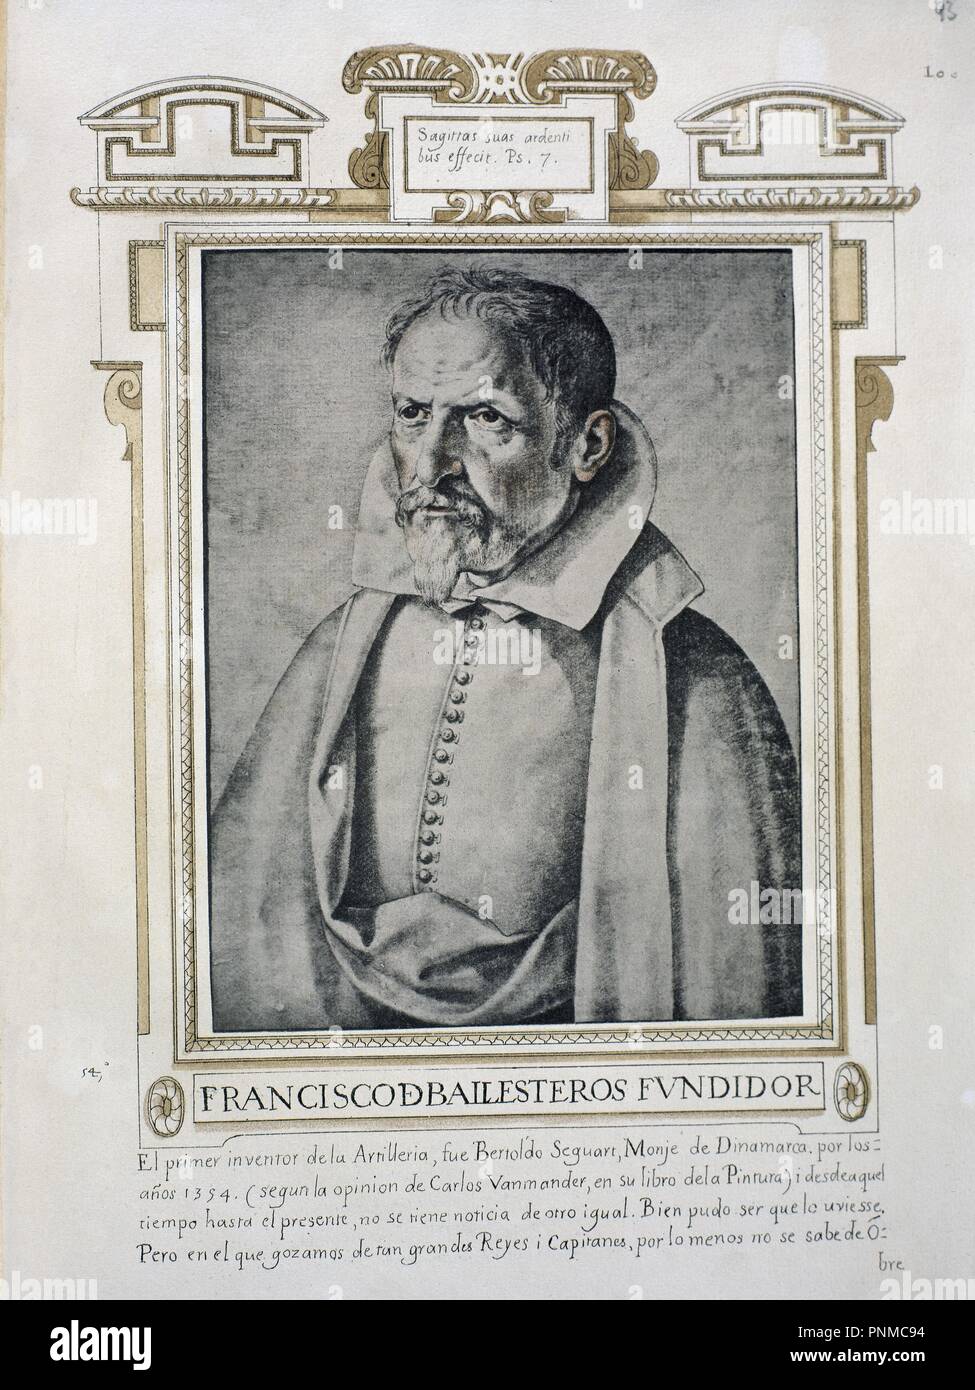 FRANCISCO BALLESTEROS FUNDIDOR (1564-1631) - LIBRO DE RETRATOS DE ILUSTRES Y MEMORABLES VARONES - 1599. Author: PACHECO, FRANCISCO. Location: BIBLIOTECA NACIONAL-COLECCION. MADRID. SPAIN. Stock Photo